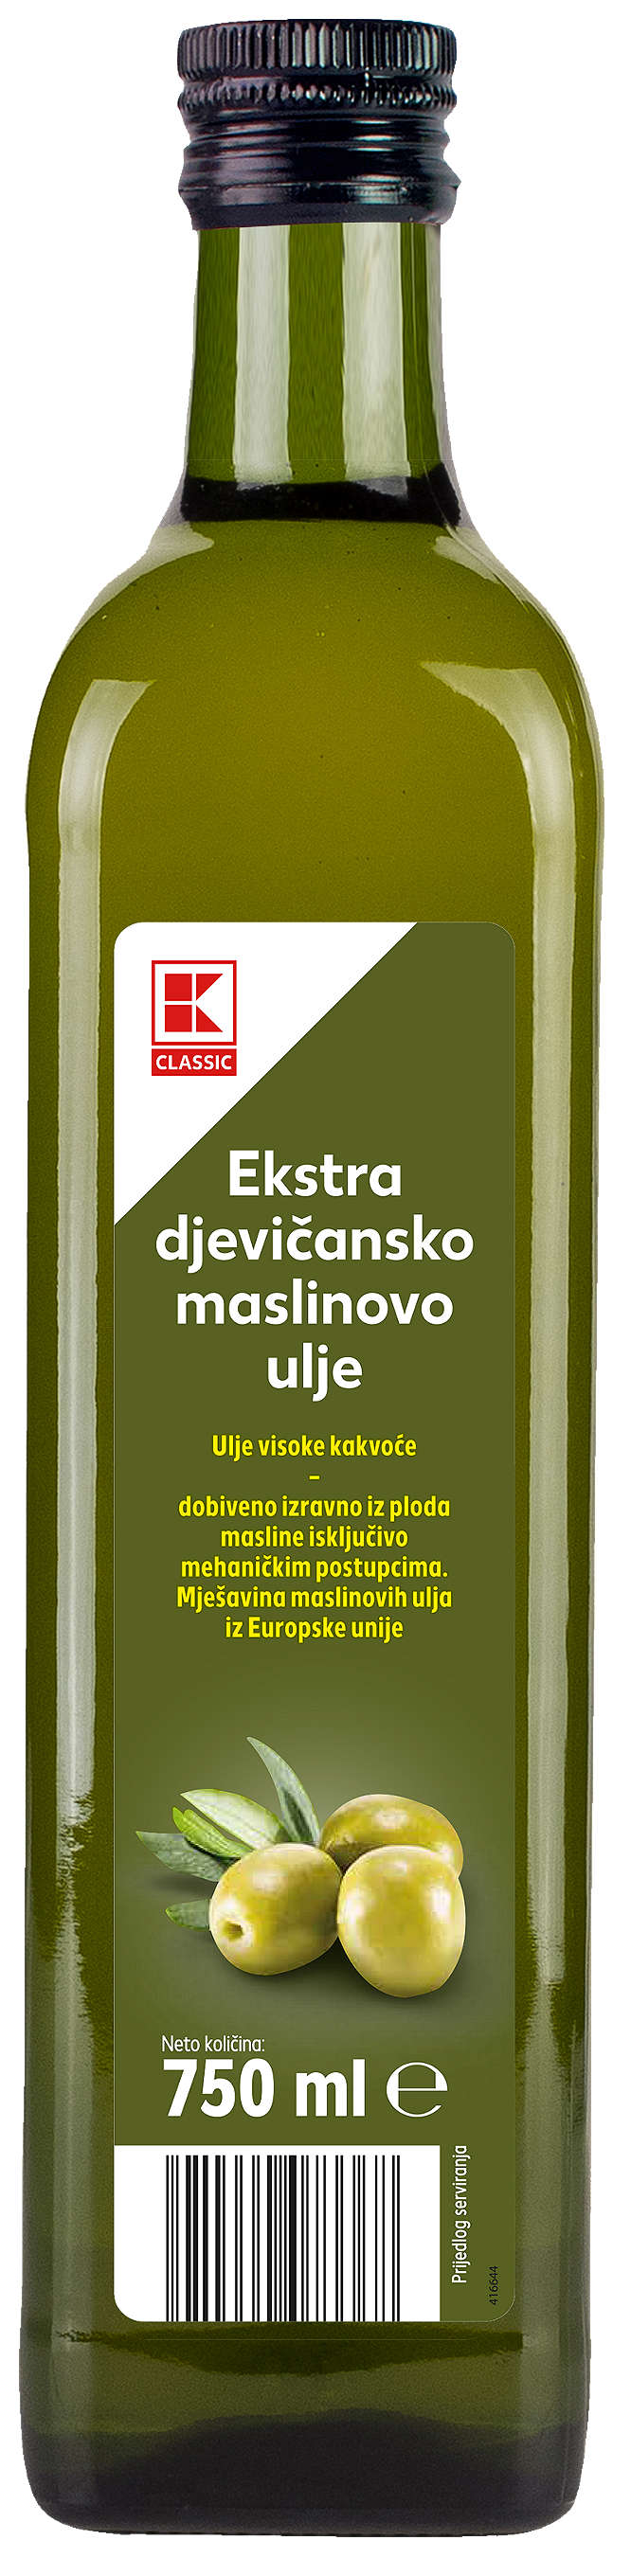 Fotografija ponude K-Classic Maslinovo ulje 750 ml